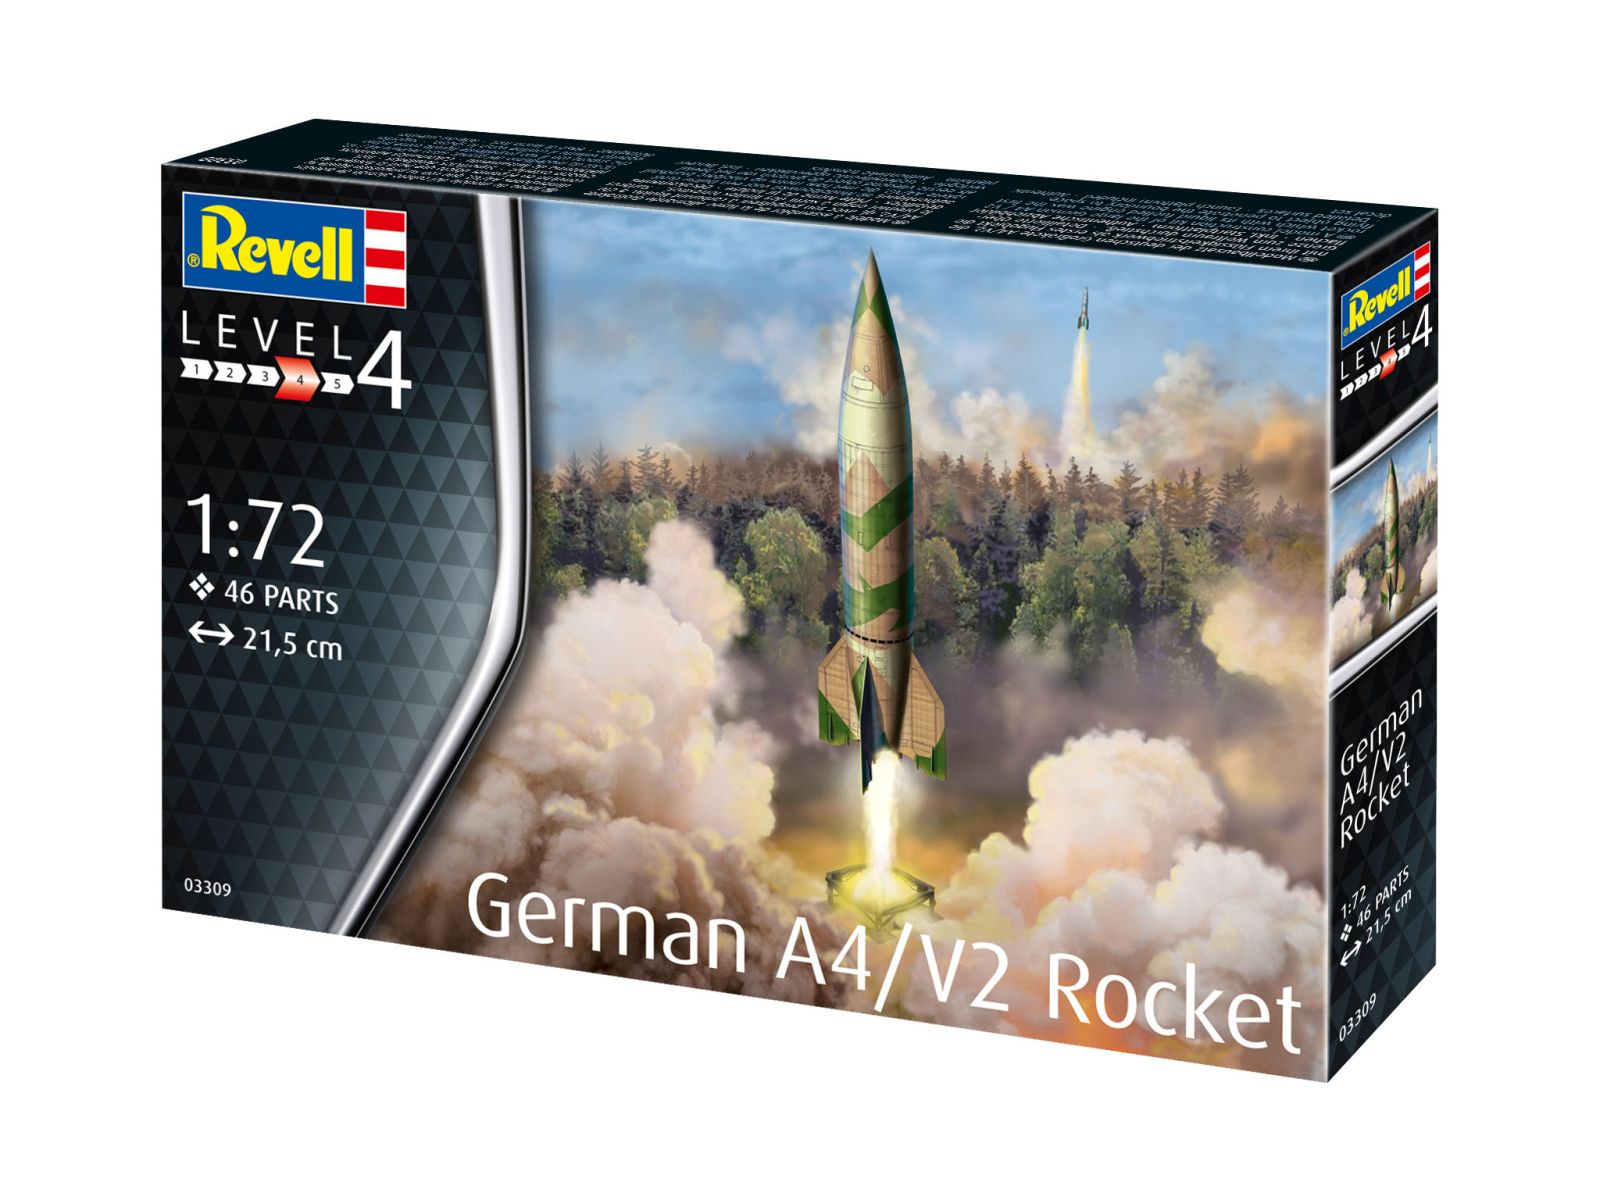 Revell 03309 - German A4/V2 Rocket